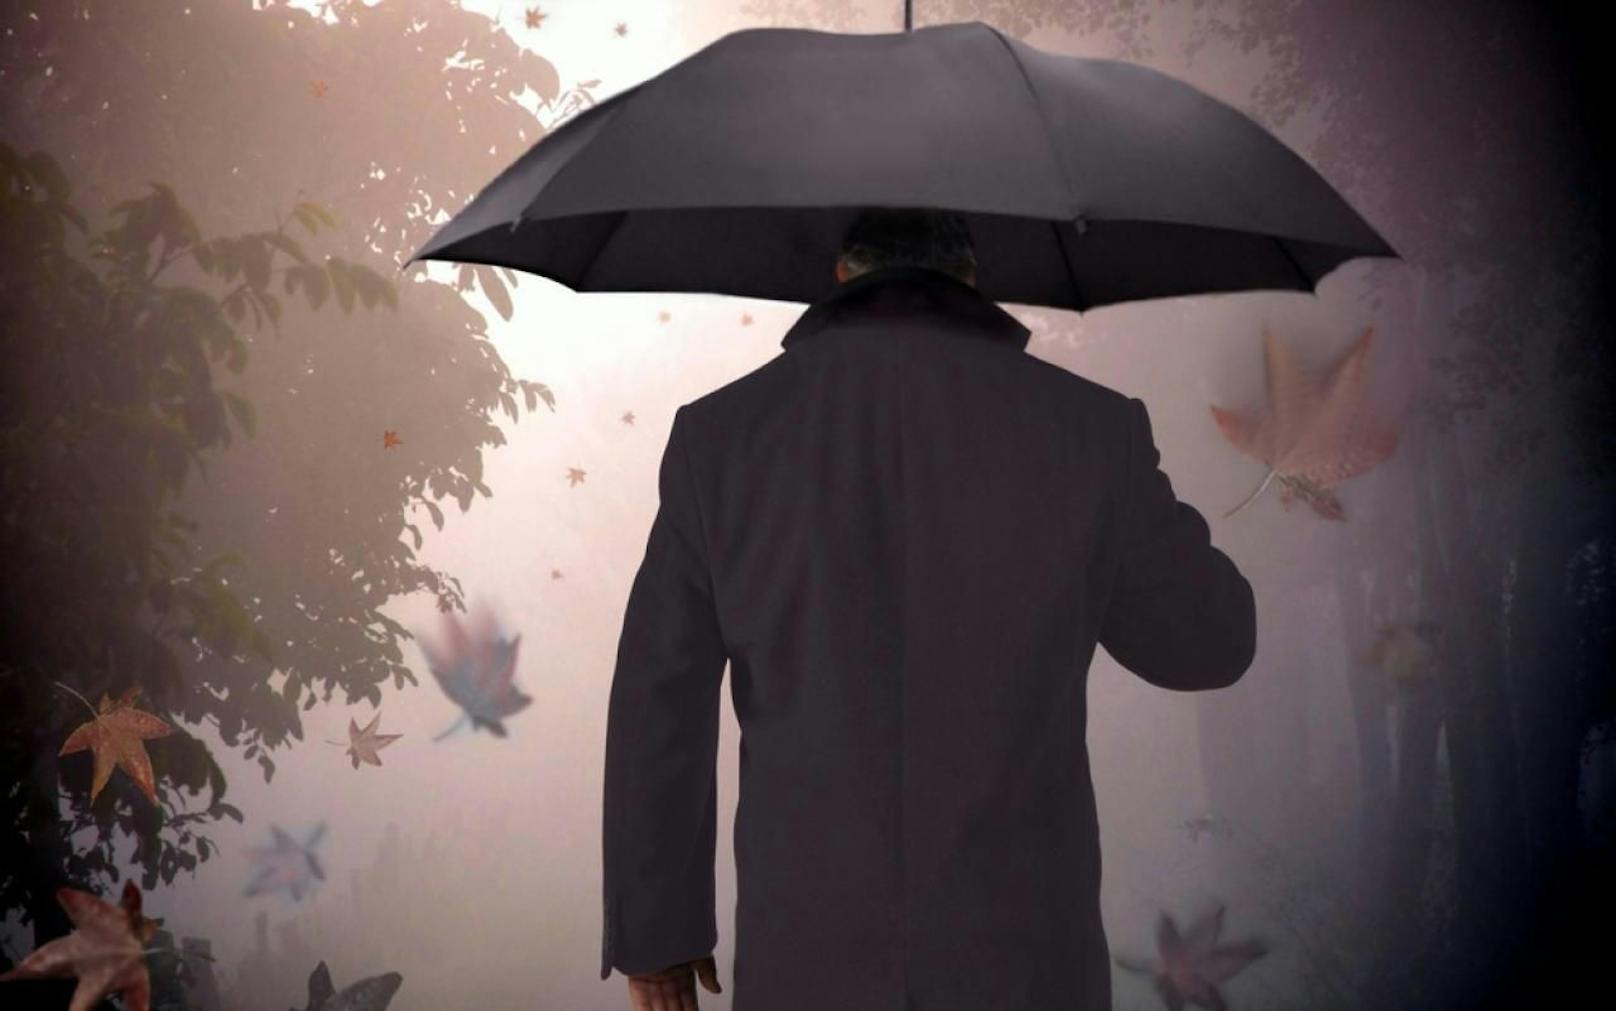 Mann stach Freundin mit Regenschirm ins Auge